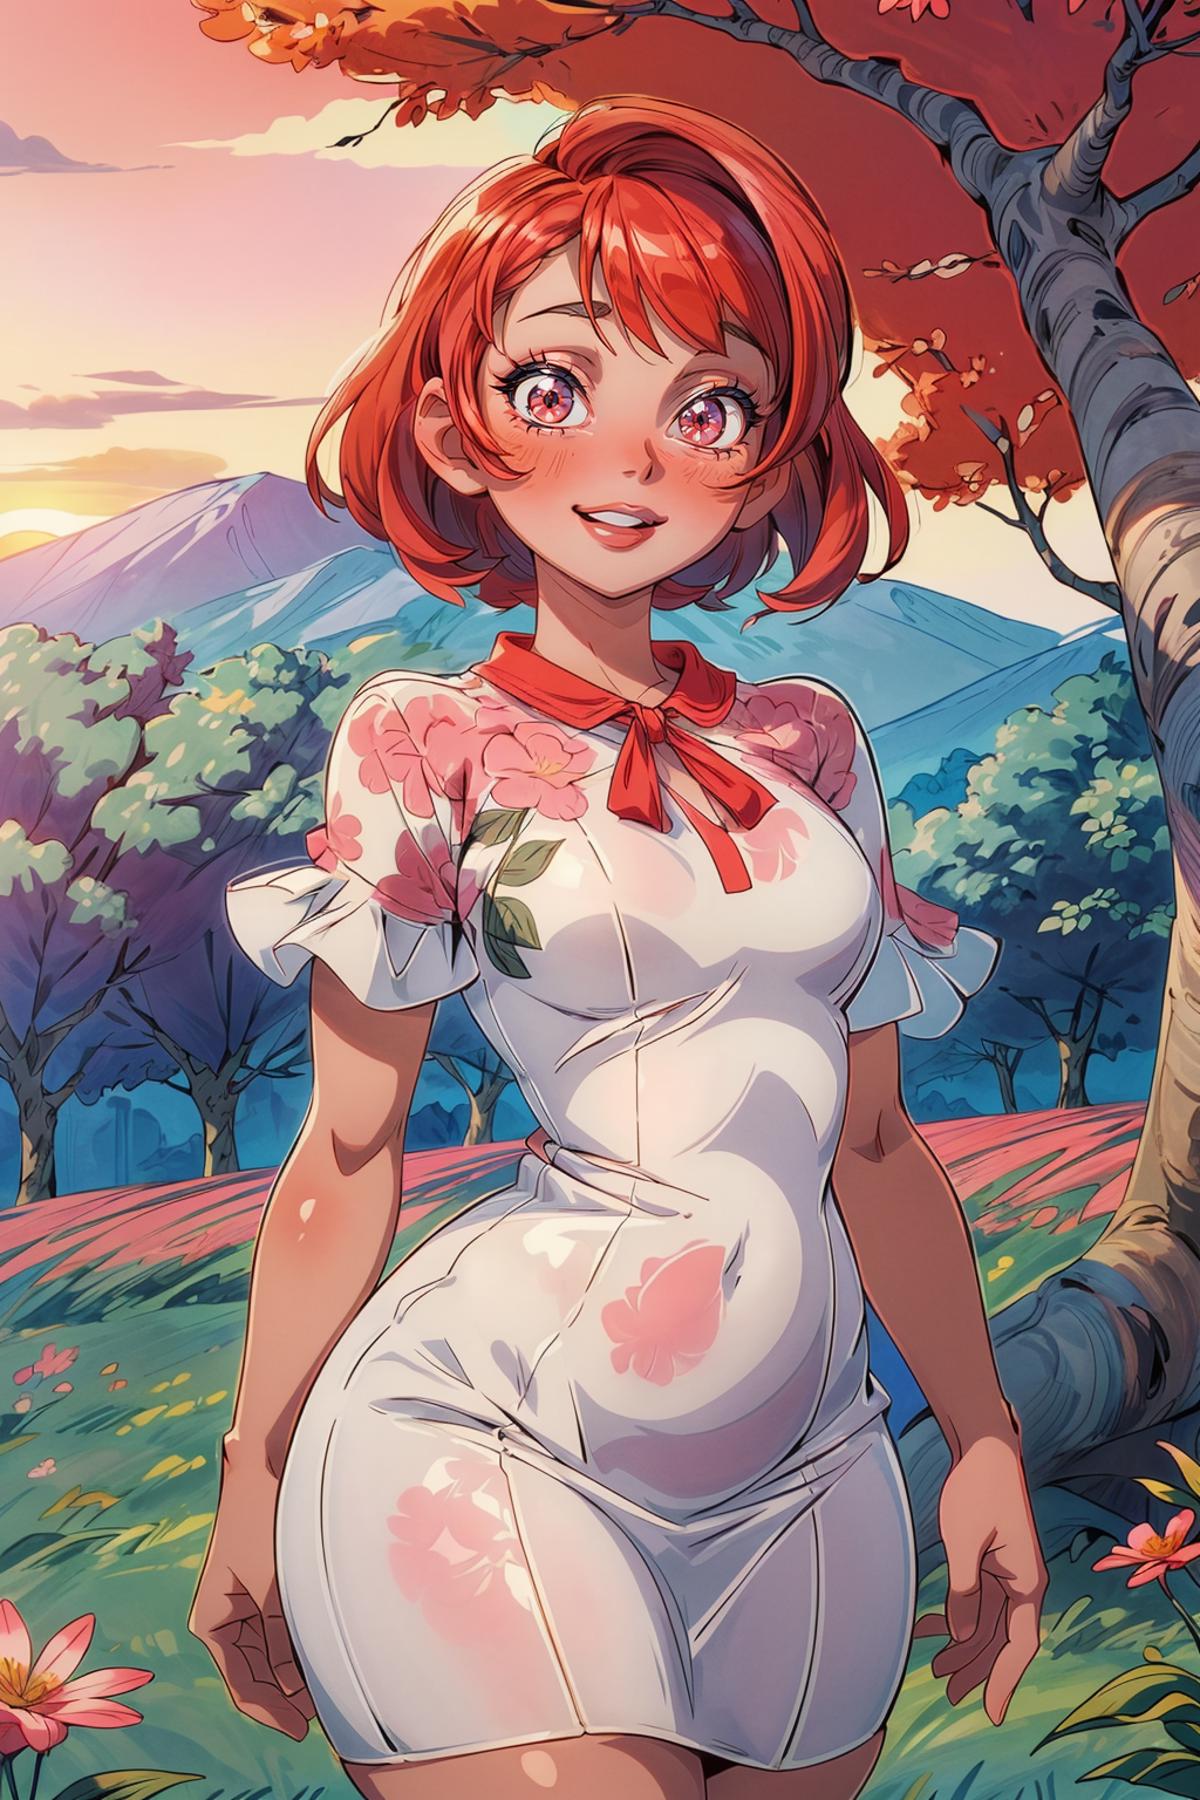 Anime Girl in Flowery Dress Standing in a Field